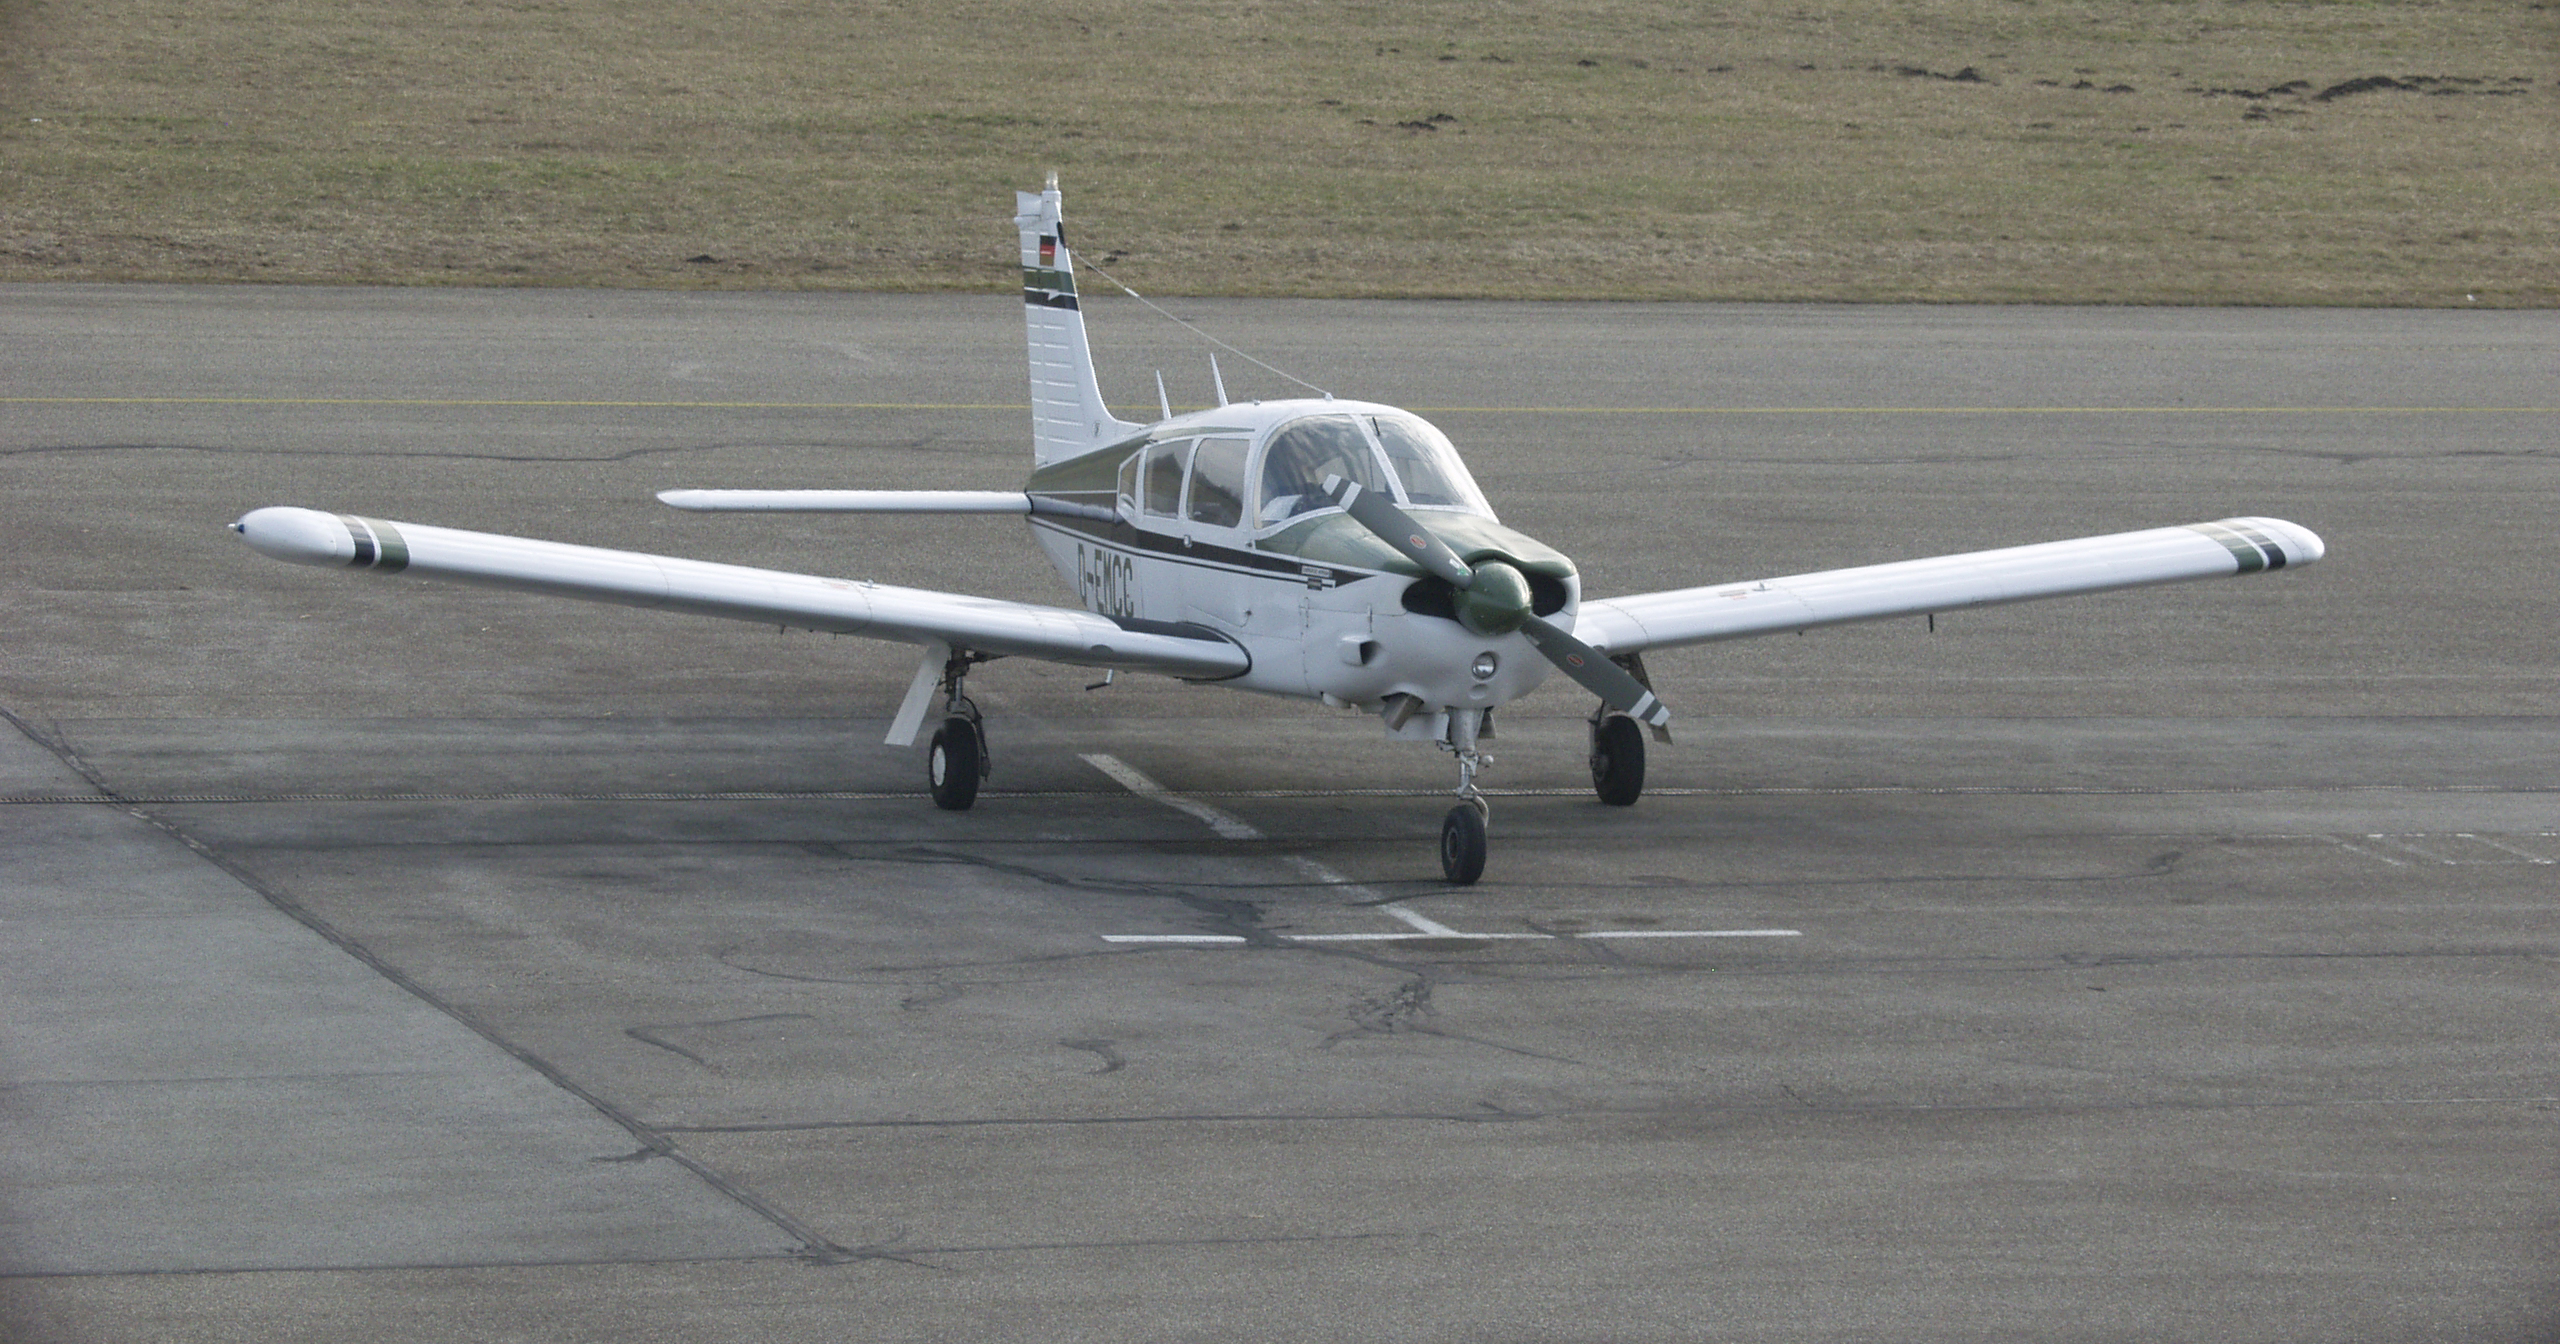 Piper PA-28R Cherokee Arrow previous